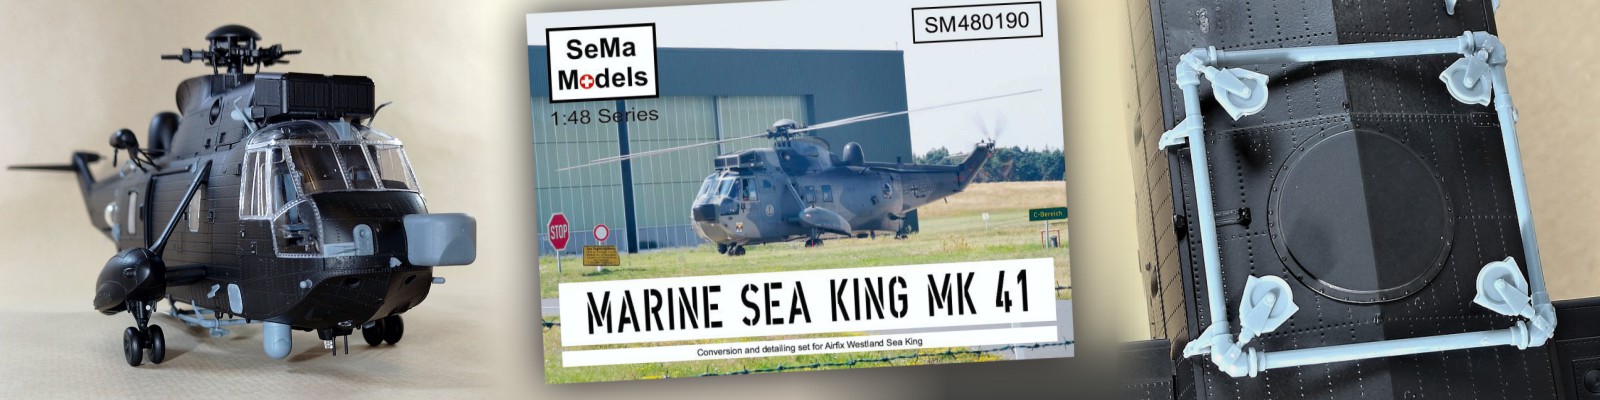 SeMa Models | Sea King Mk.41 Deutsche Marine Umbausatz